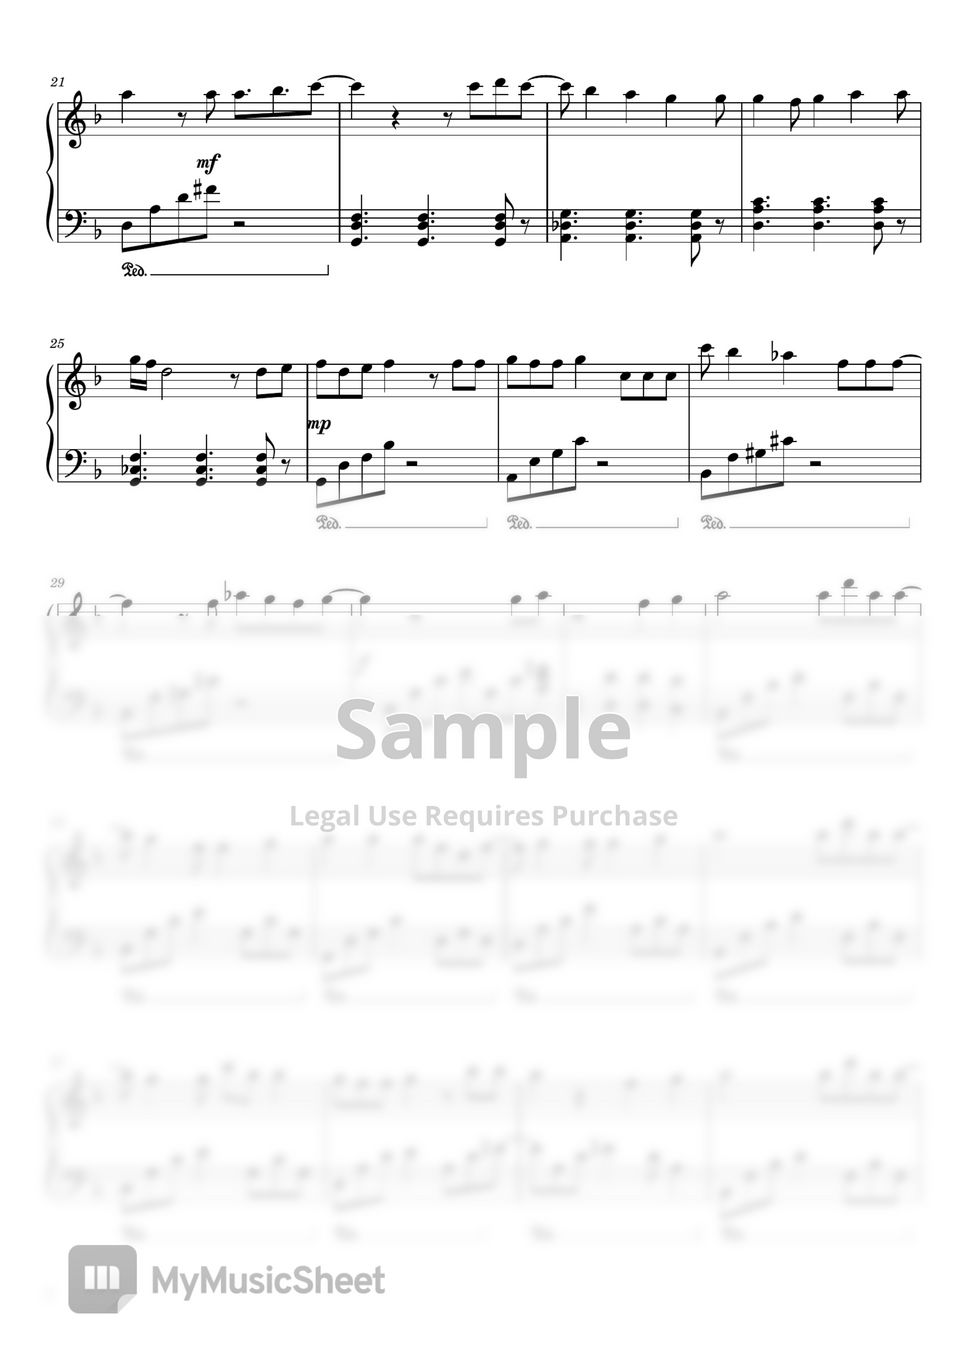 Yasuharu Takanashi - Naruto Shippuden OP5 (For Easy Piano) by poon